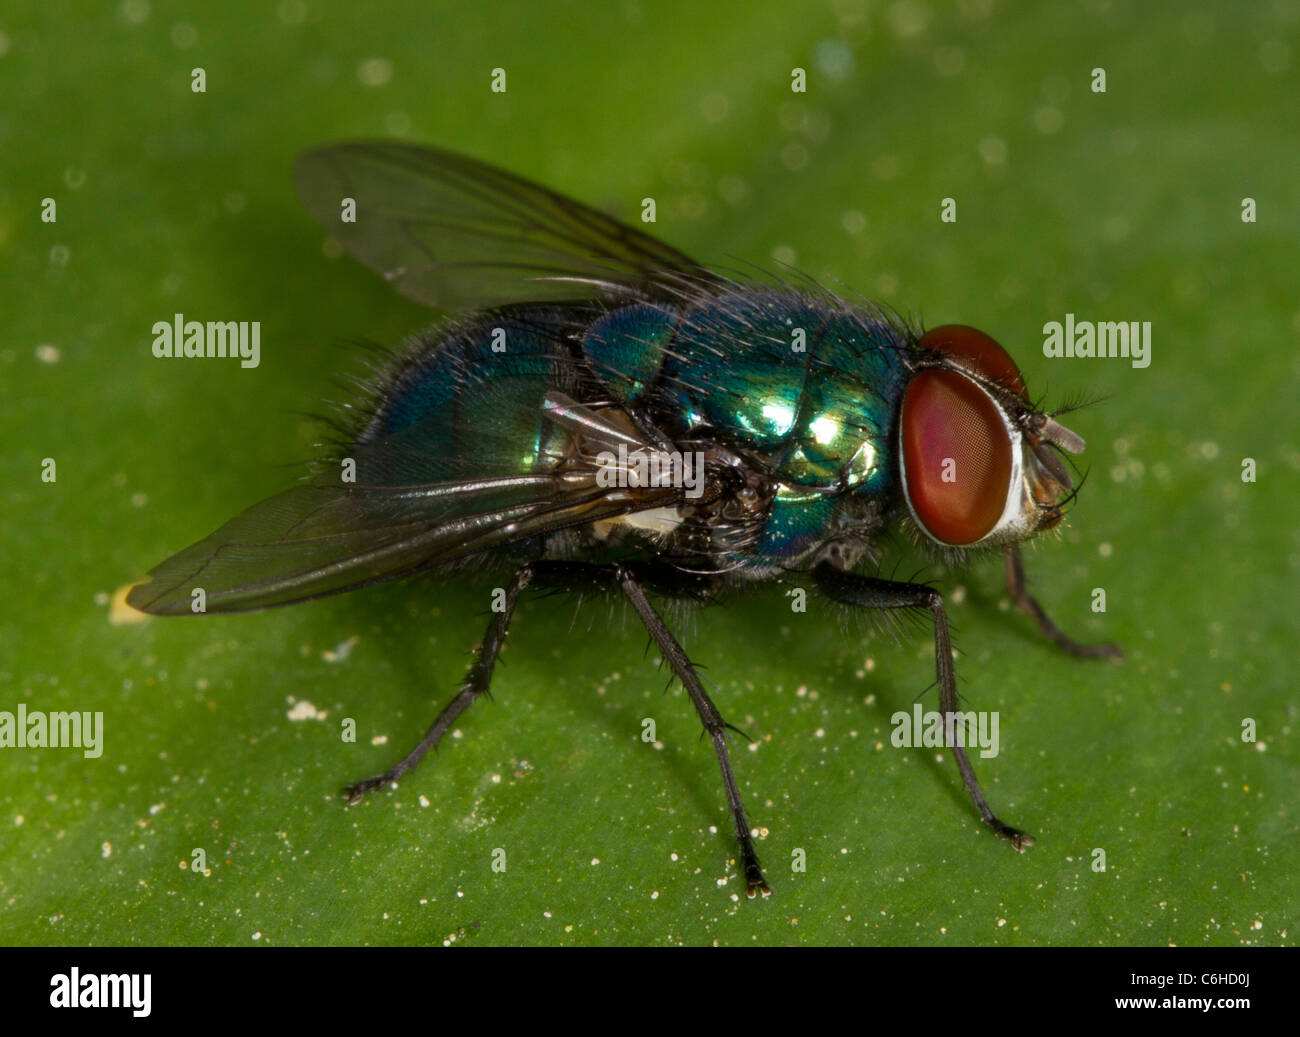 Greenbottle Fly (Lucilia oder Paenicia Sericata), eine gemeinsame Schmeißfliege. Durch forensische Entomologen zur Altersbestimmung von Leichen. Stockfoto